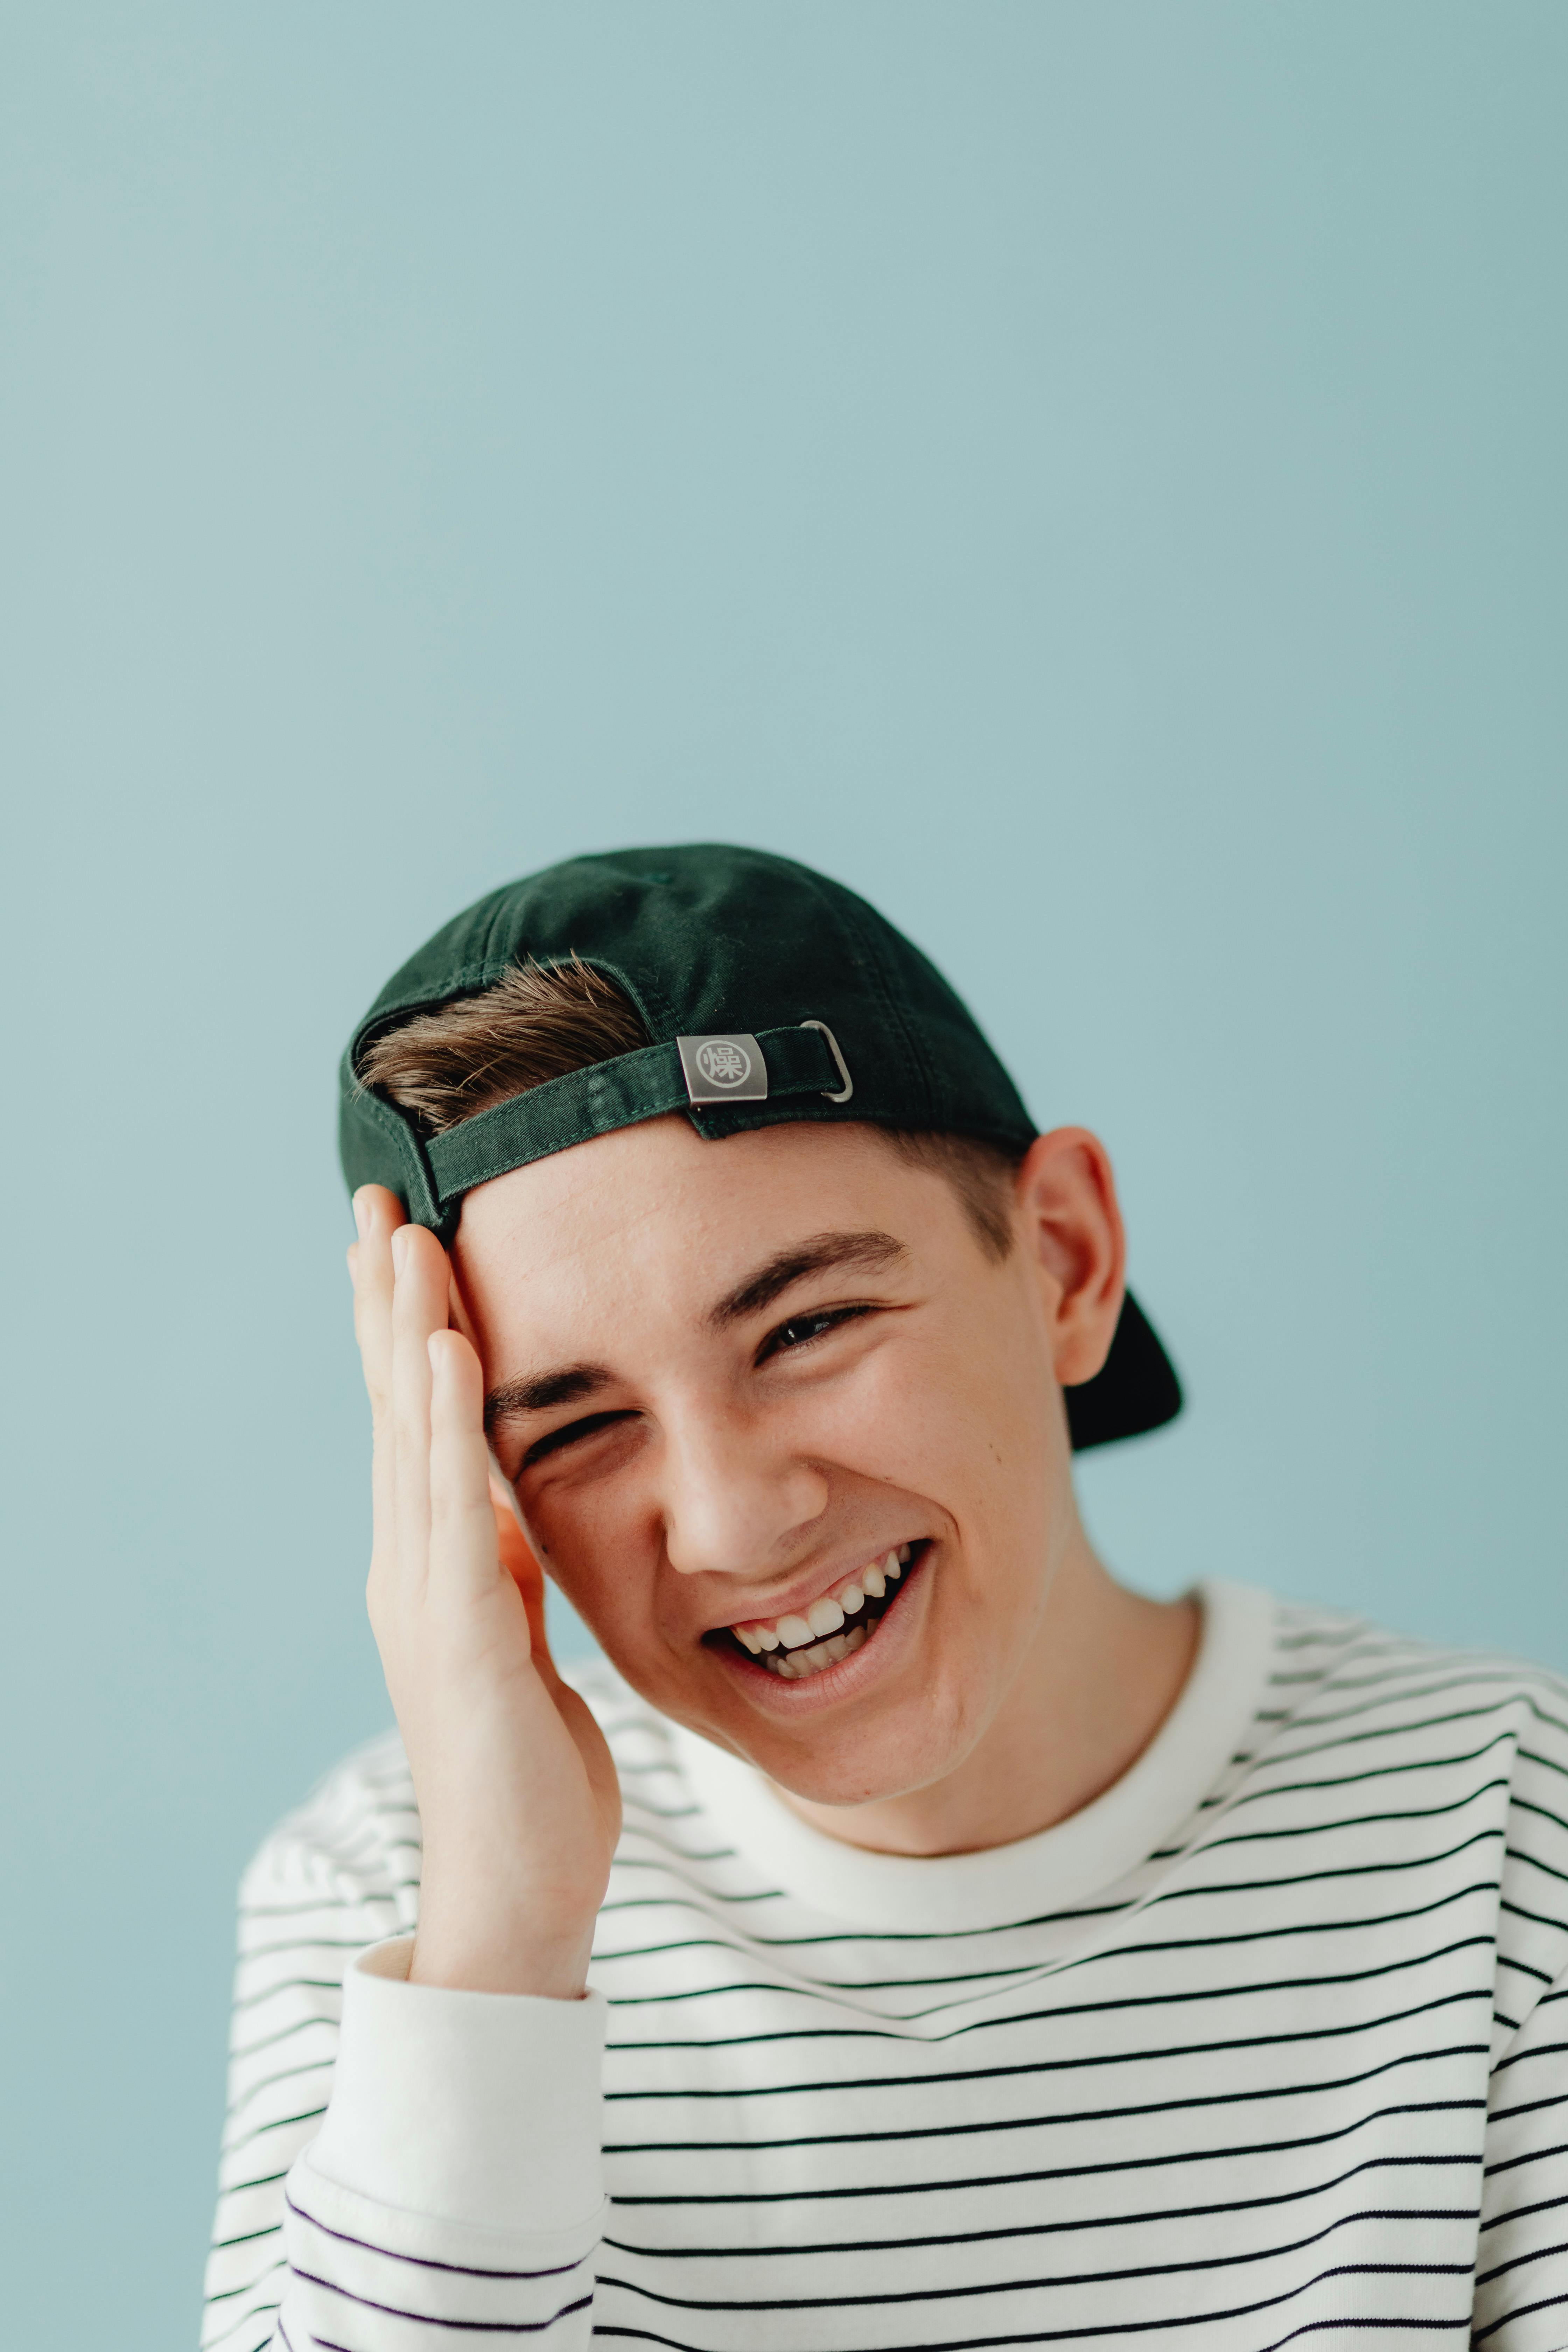 Ein lachender Teenager | Quelle: Pexels